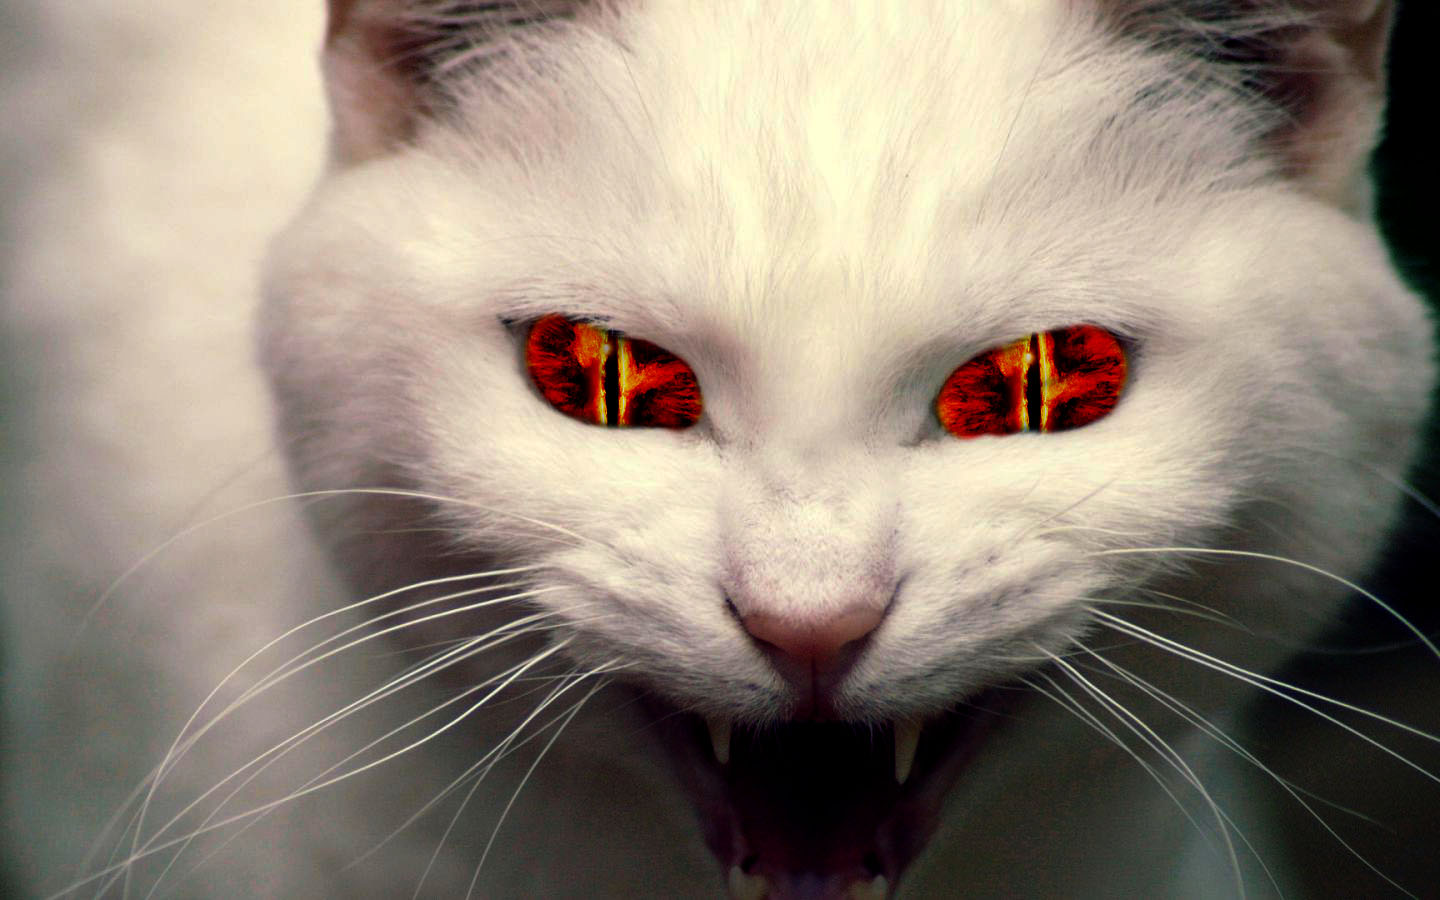 evil-cat.jpg